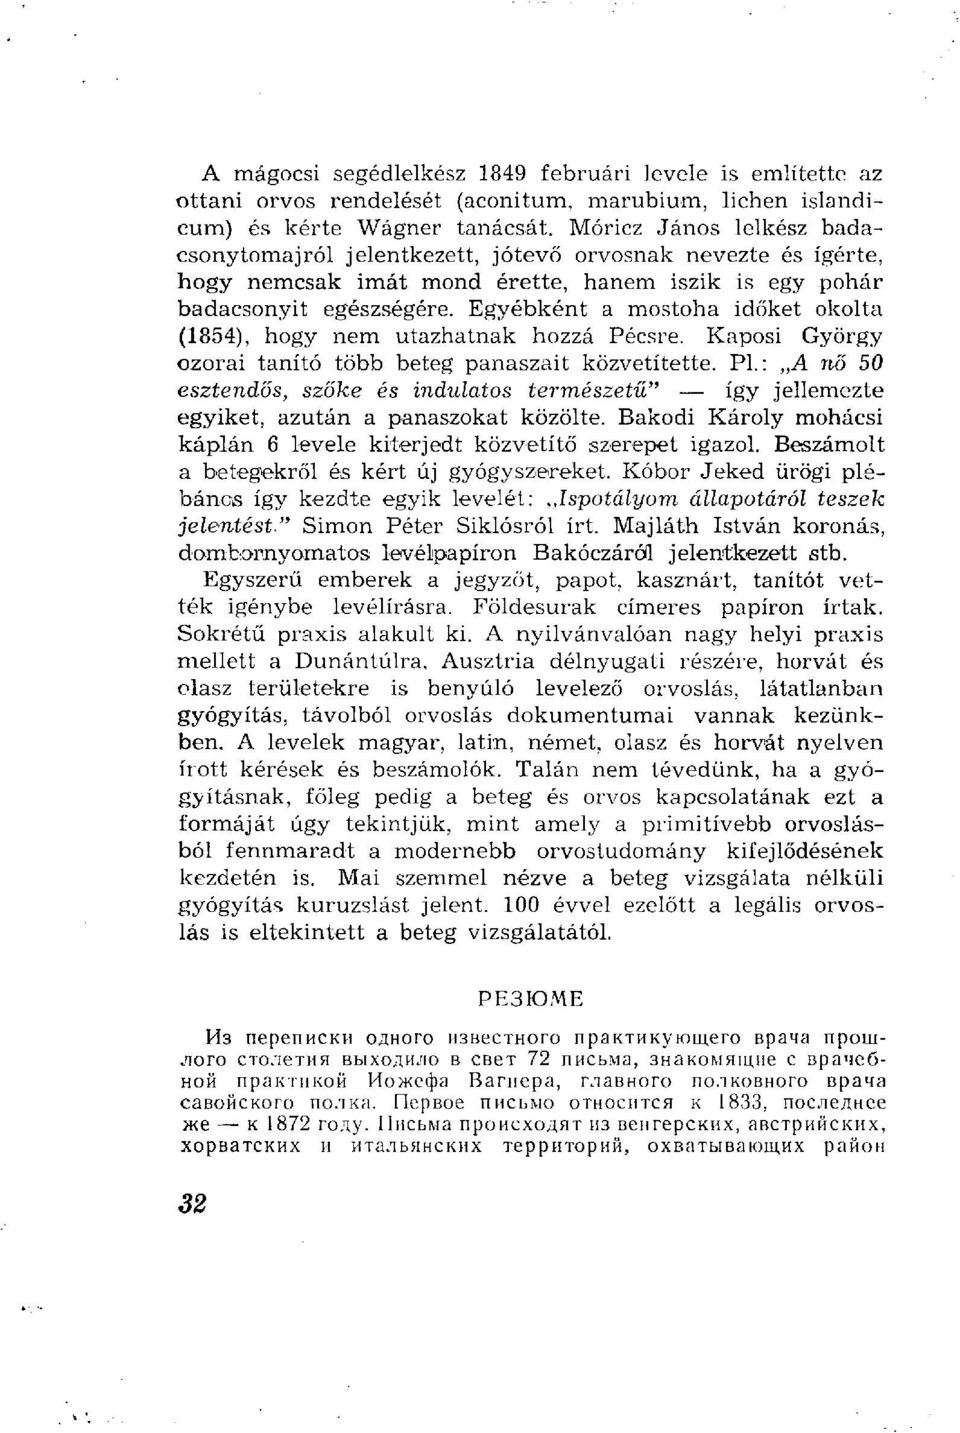 Egyébként a mostoha időket okolta (1854), hogy nem utazhatnak hozzá Pécsre. Kaposi György ozorai tanító több beteg panaszait közvetítette. Pl.